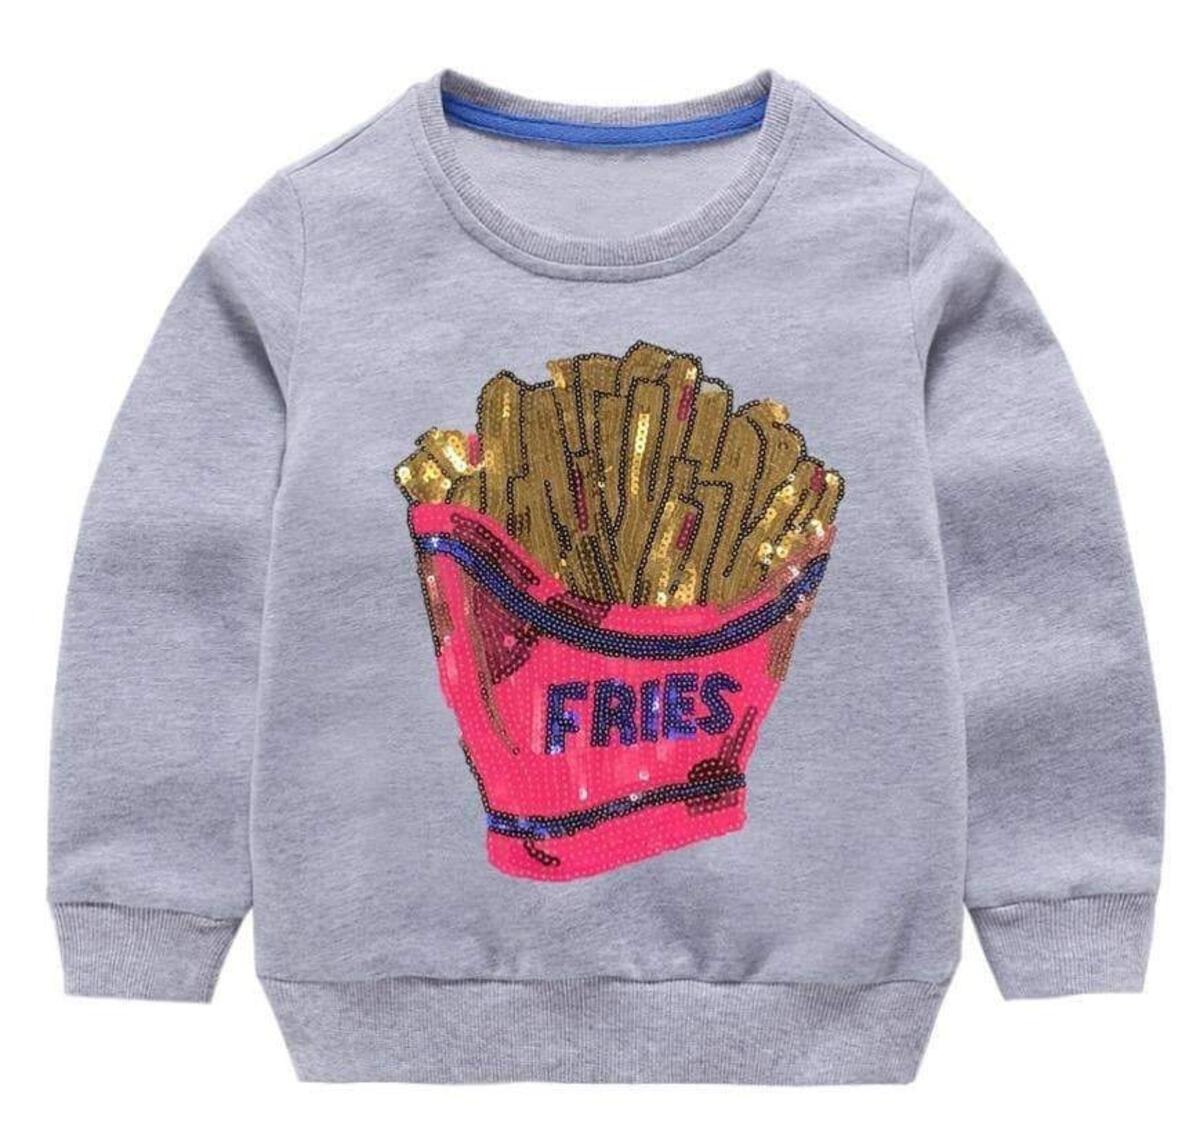 Sequin Fries Sweatshirt